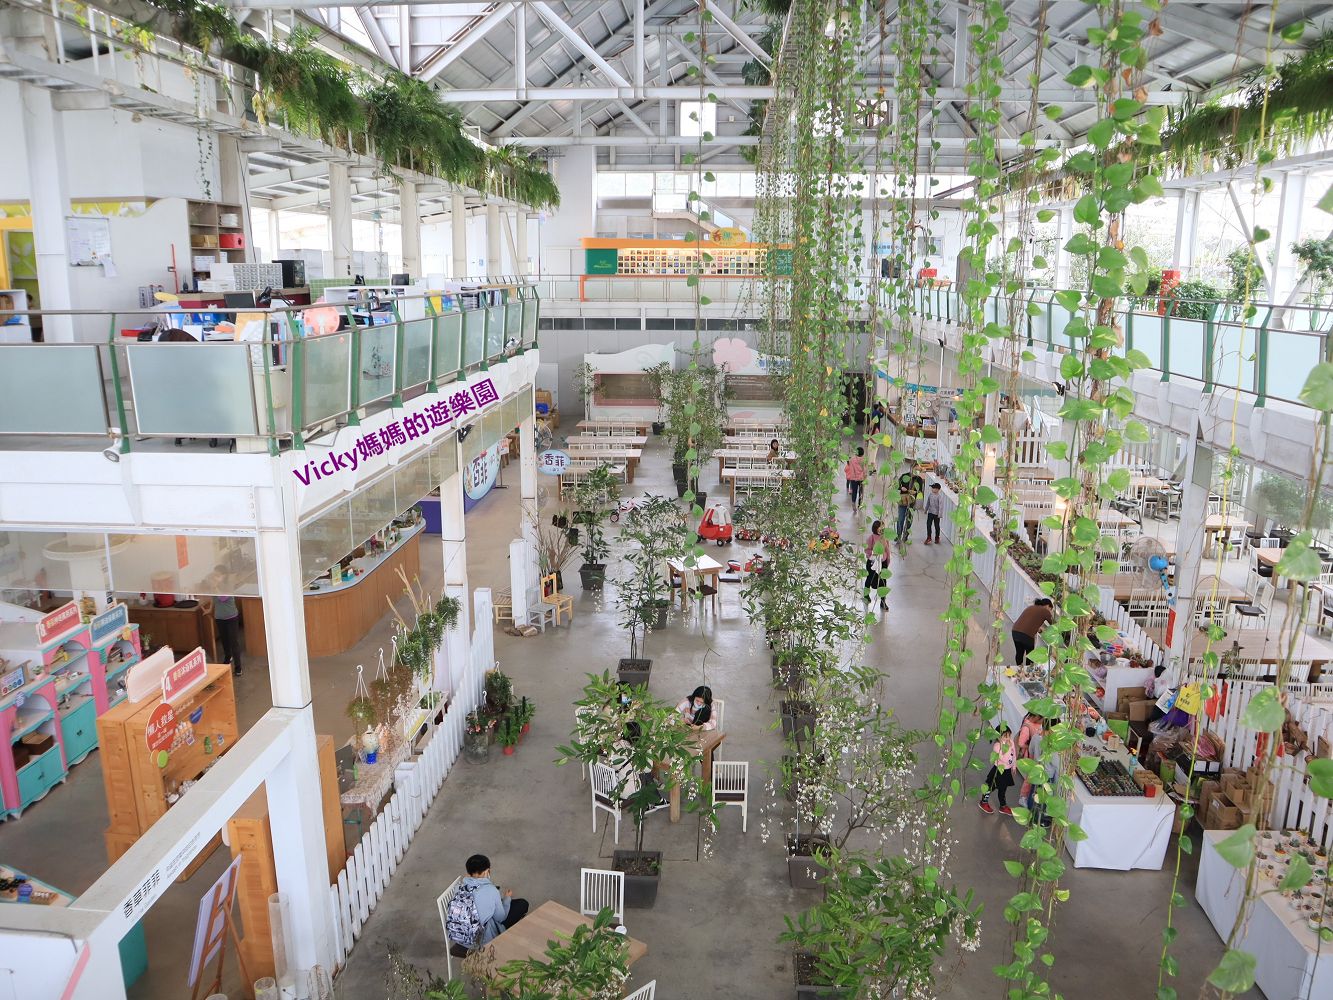 宜蘭景點︱香草菲菲 芳香植物博物館：充滿香草的空中廊道好美好拍好浪漫，親子一起植栽DIY，超適合親子的室內景點